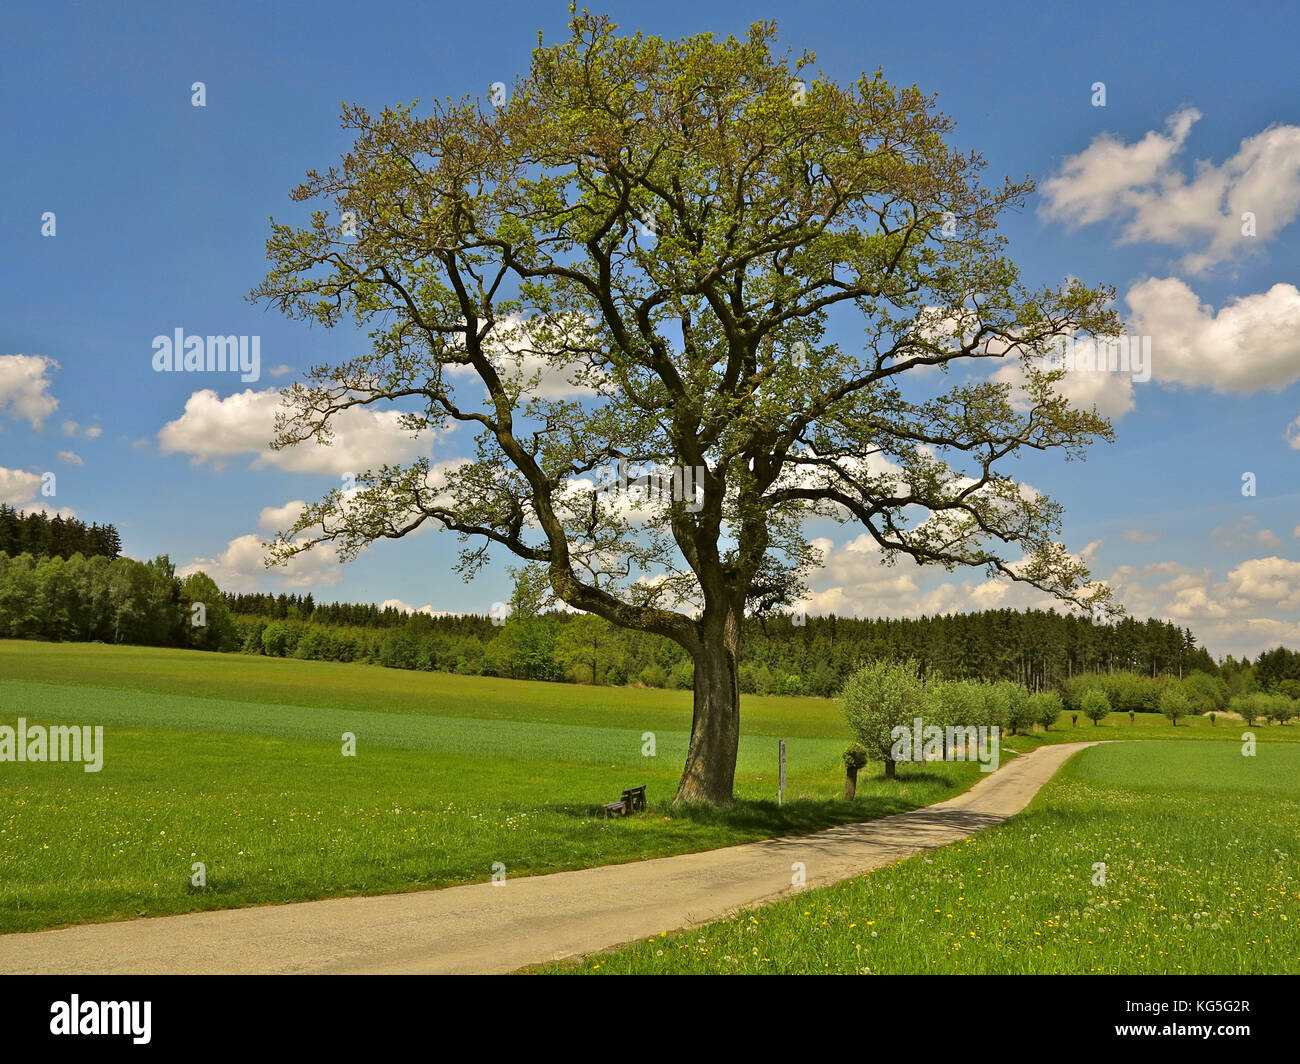 In Germania, in baviera, vicino germering, albero, rovere, prato, pista ciclabile e sentiero, molla Foto Stock